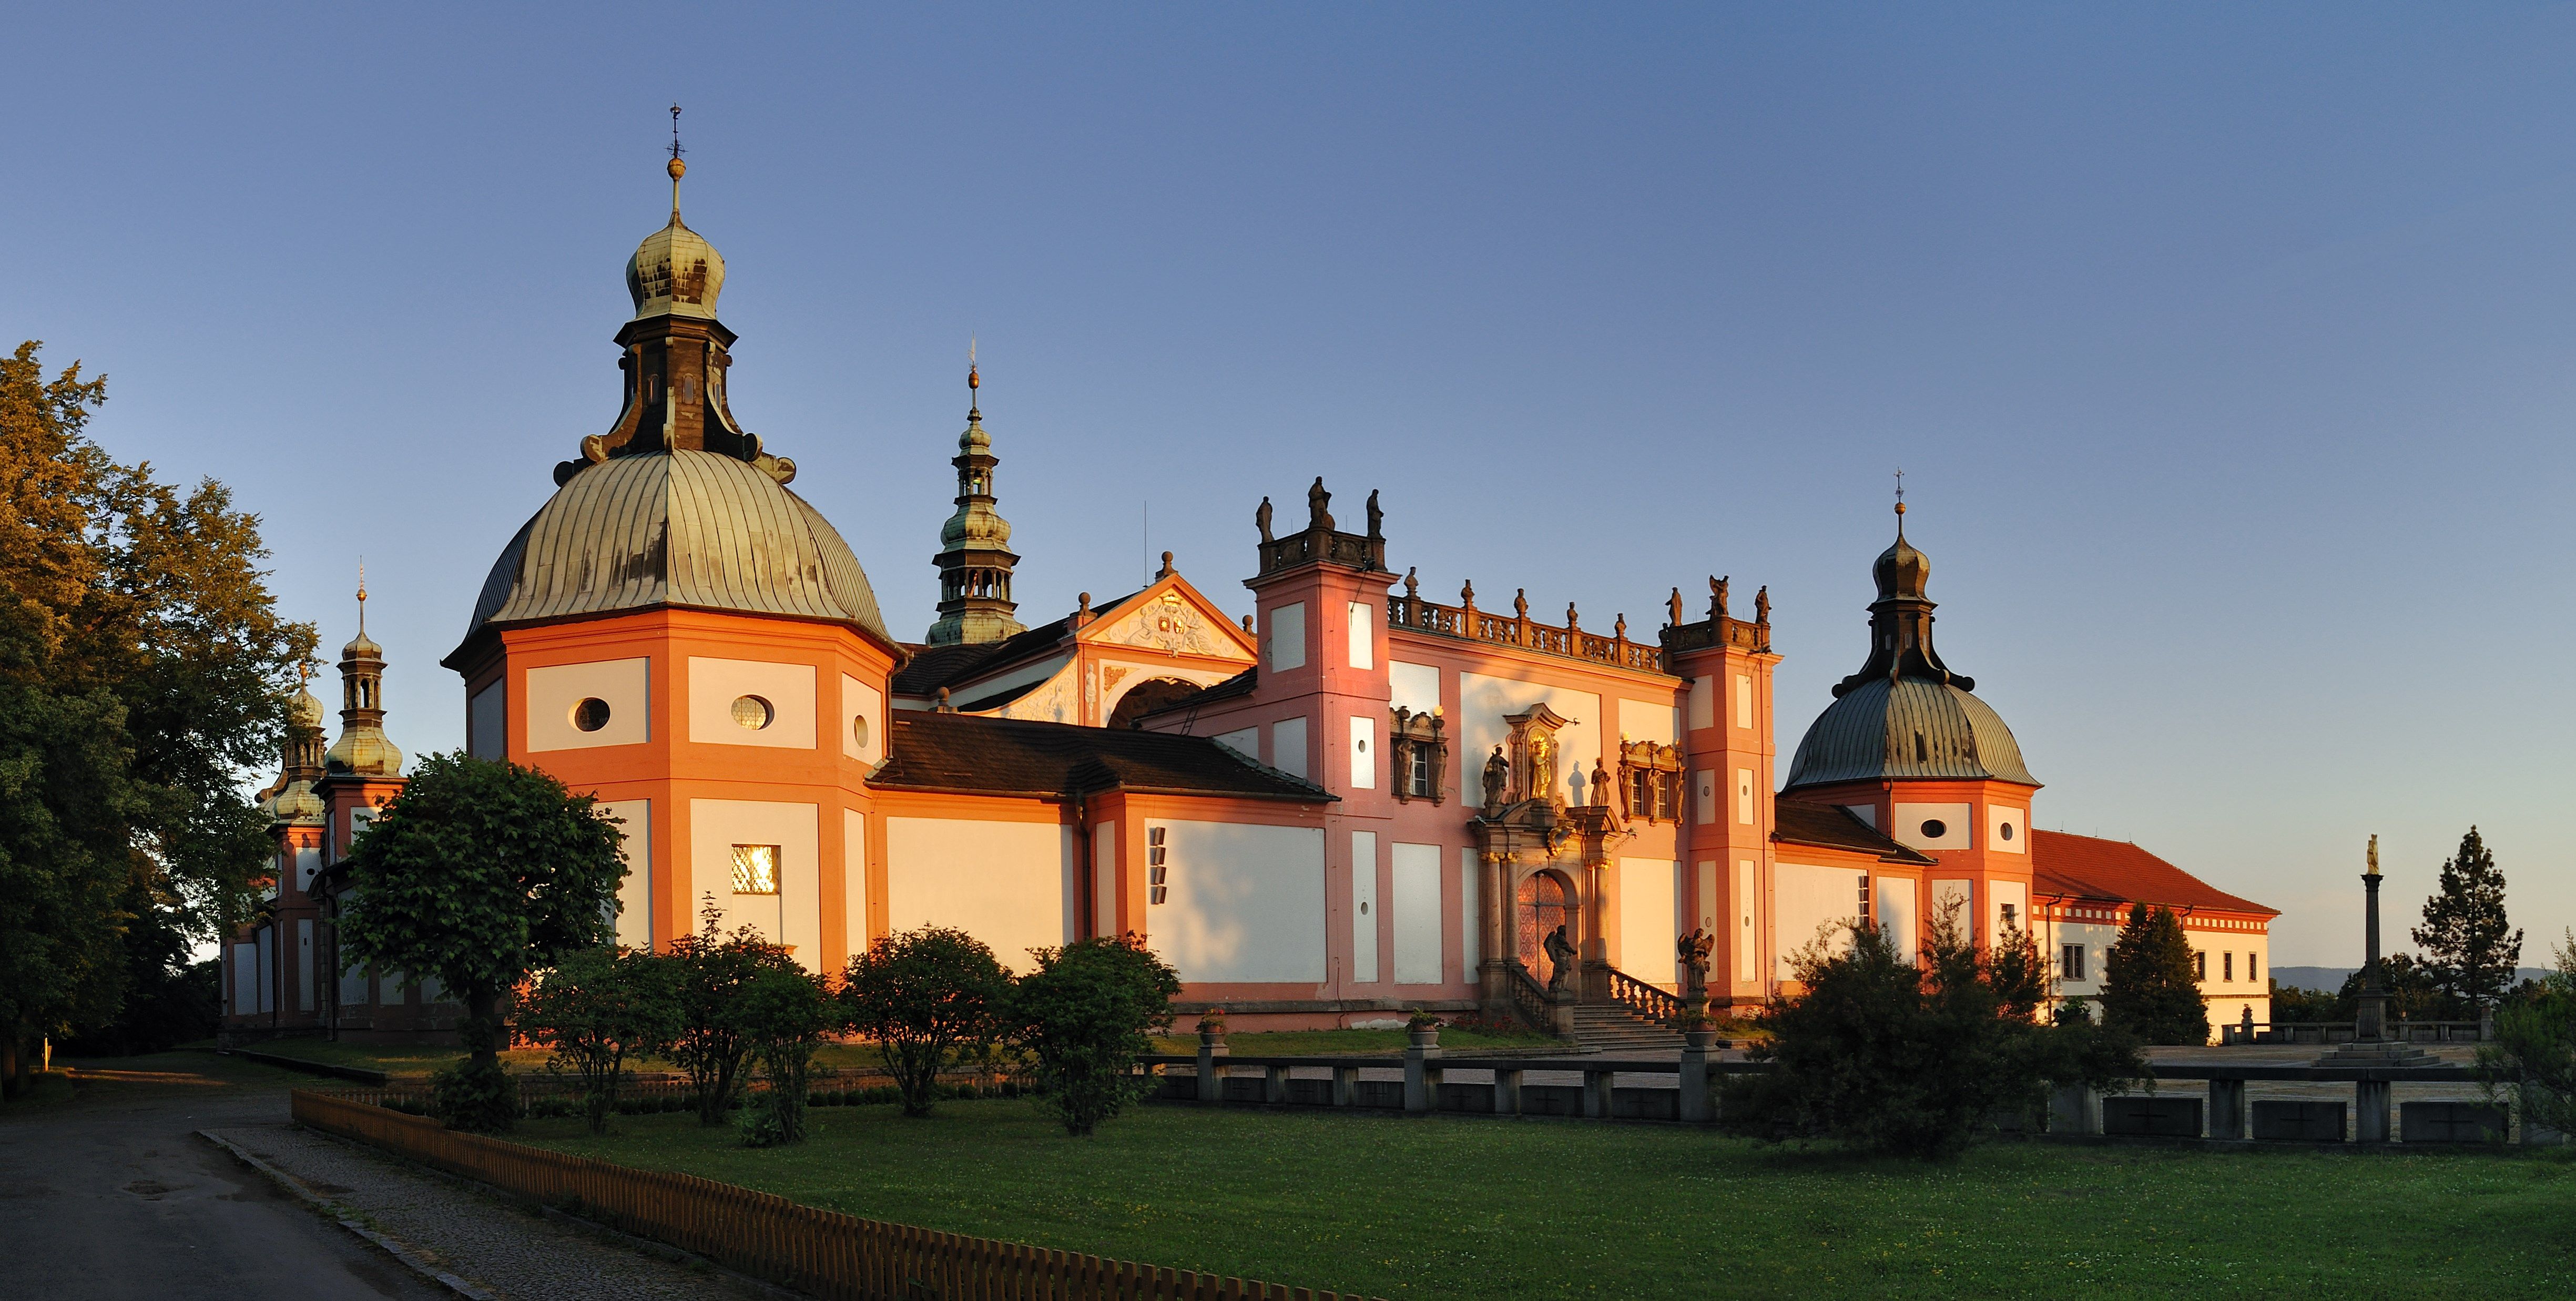 Kloosters, Kerken en Bibliotheken in Tsjechië